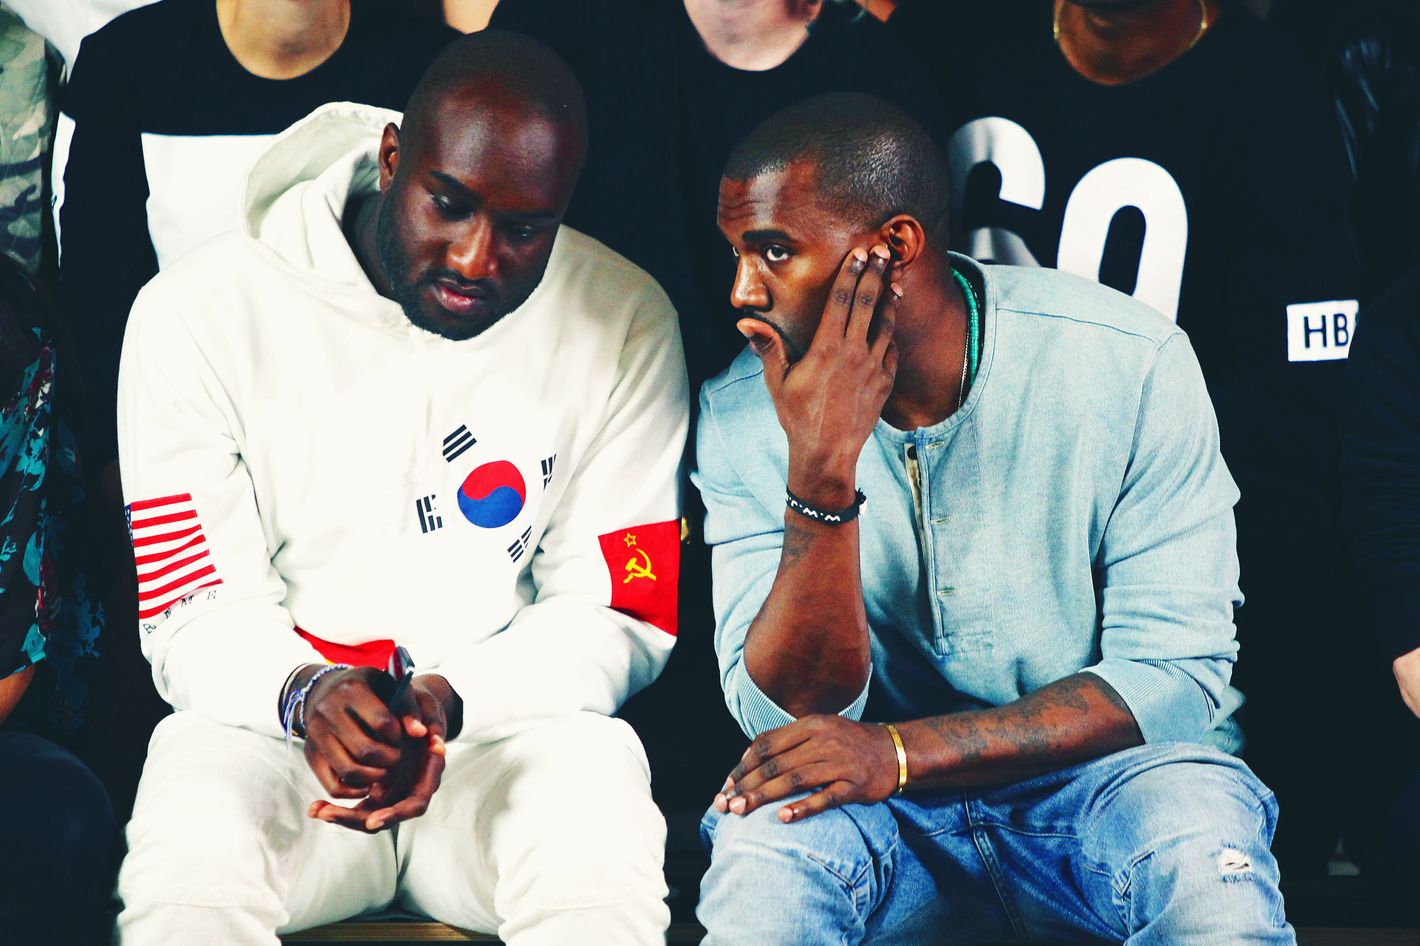 Kanye West Trashes Dead Designer Friend Virgil Abloh